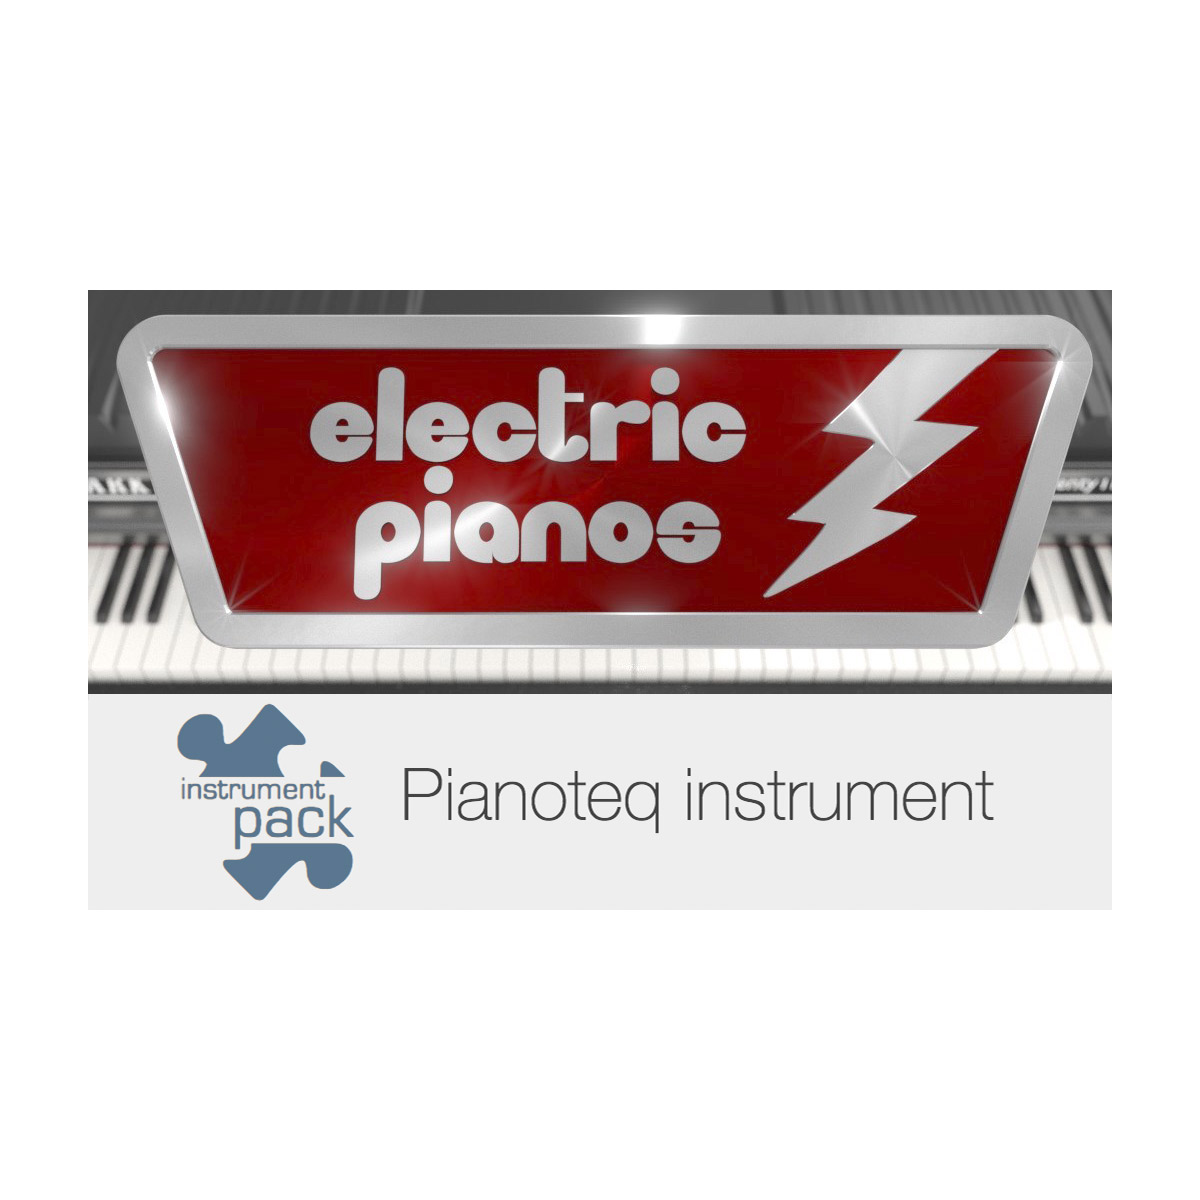 【2022正規激安】 おまけ付 MODARTT Electric Pianos add-on for Pianoteq 専用拡張音源 メール納品 代引き不可 coincronica.de coincronica.de